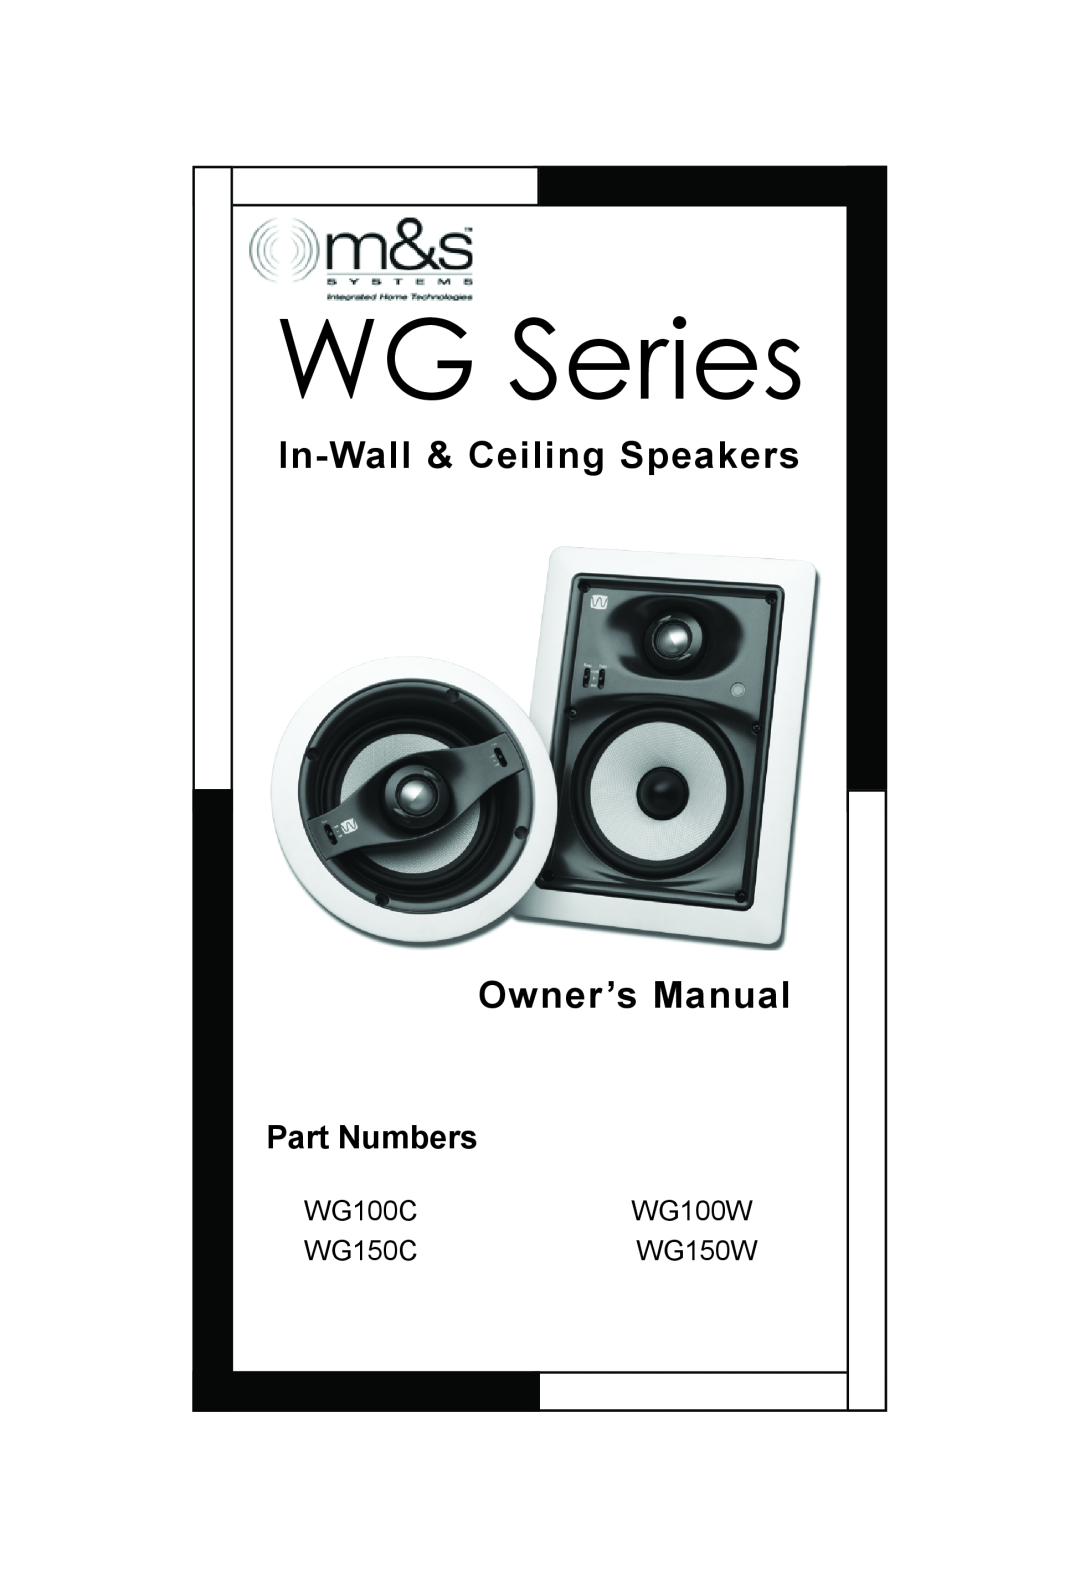 M&S Systems owner manual Part Numbers, WG Series, WG100CWG100W WG150CWG150W 